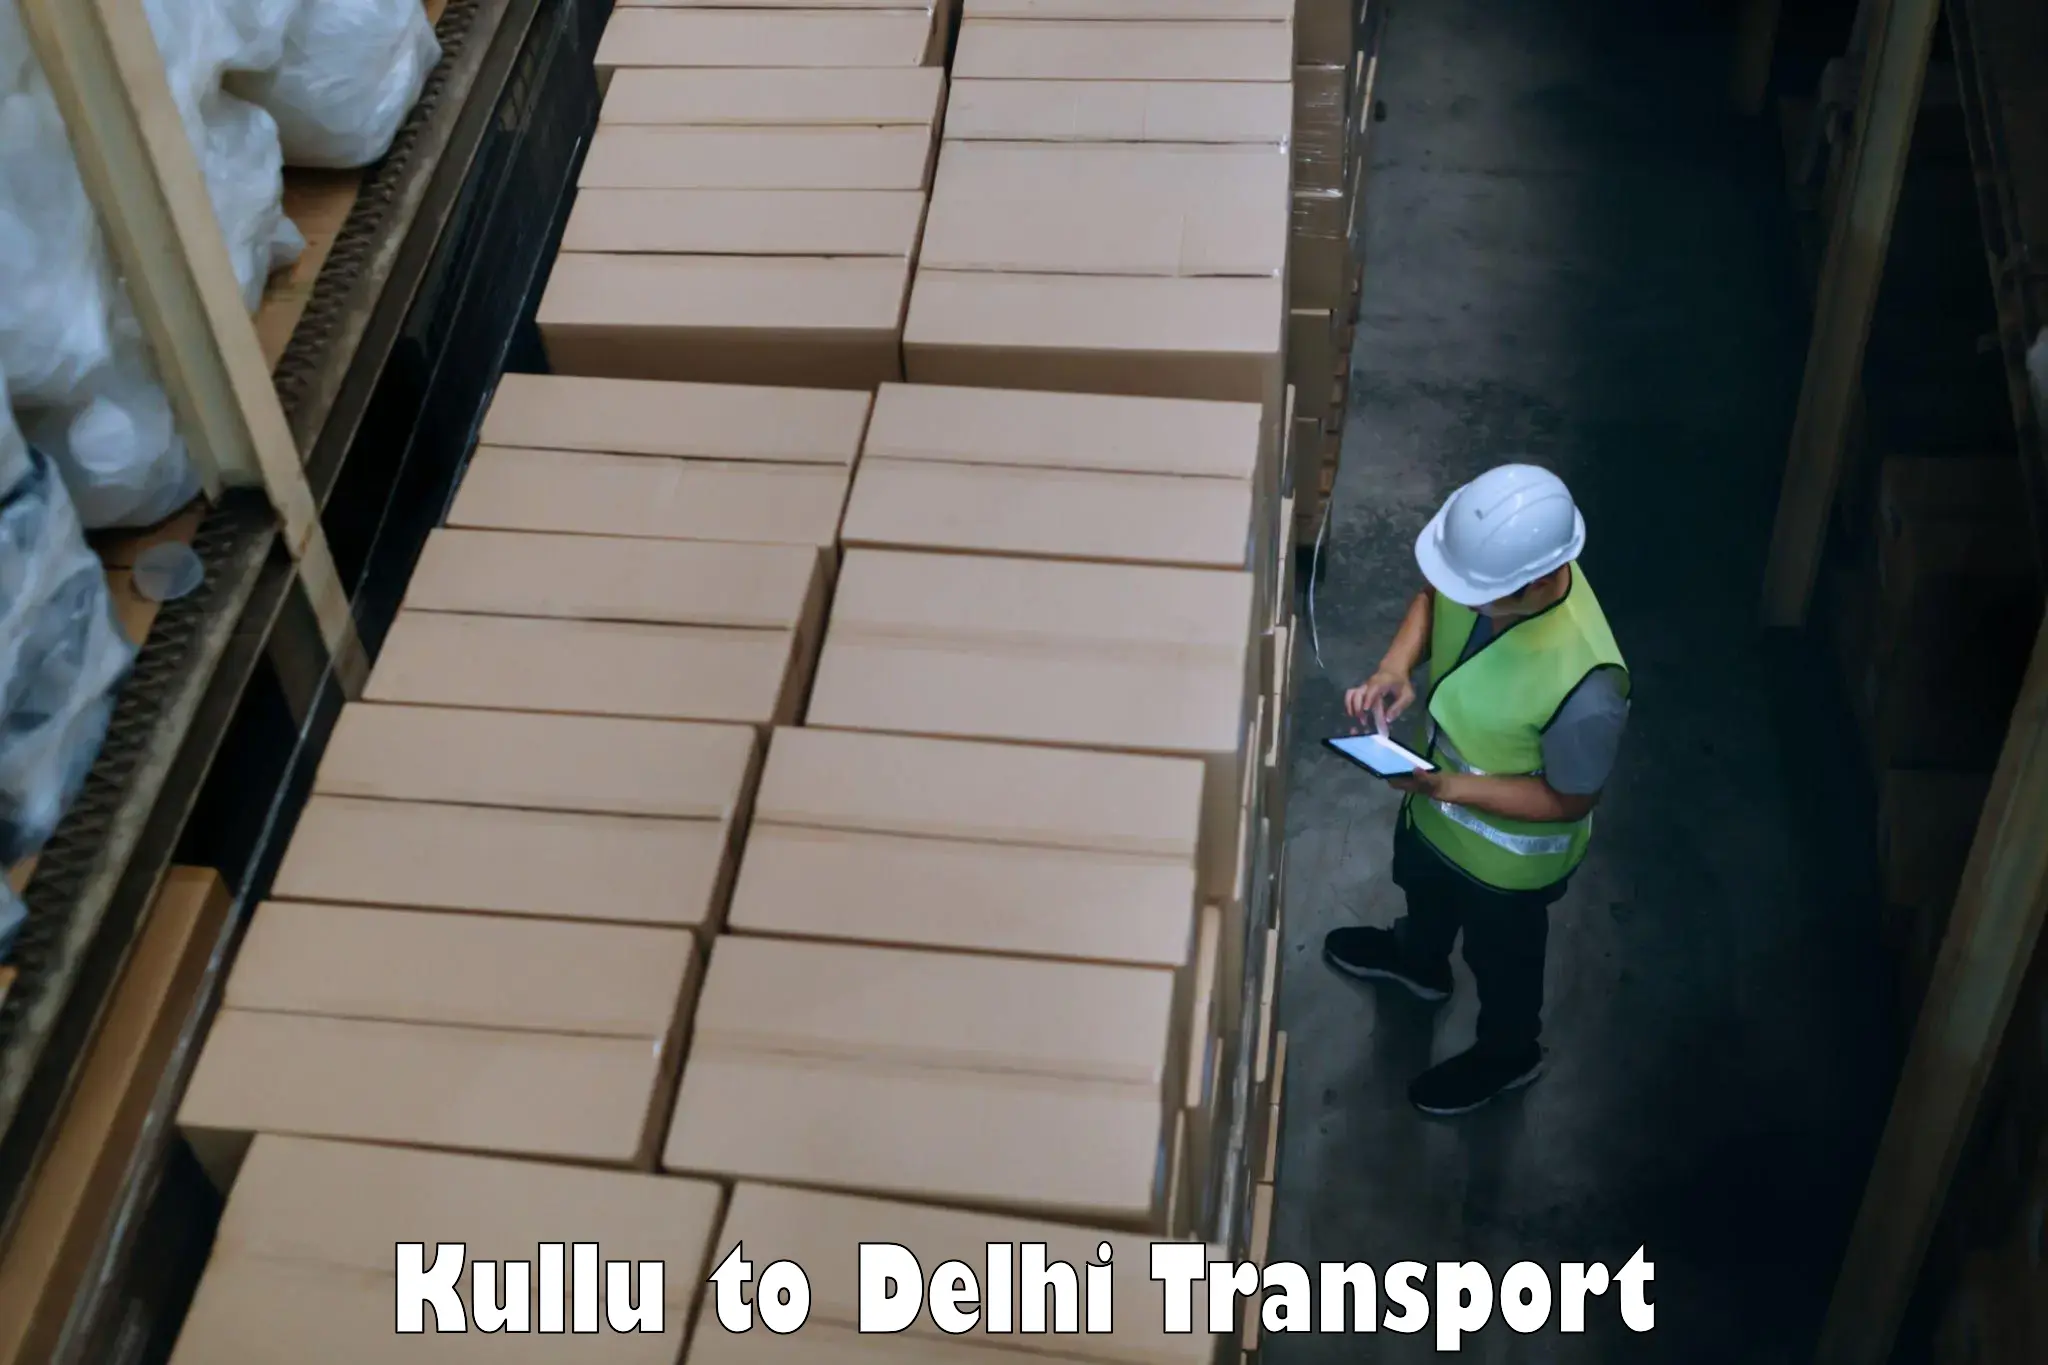 Furniture transport service Kullu to Subhash Nagar